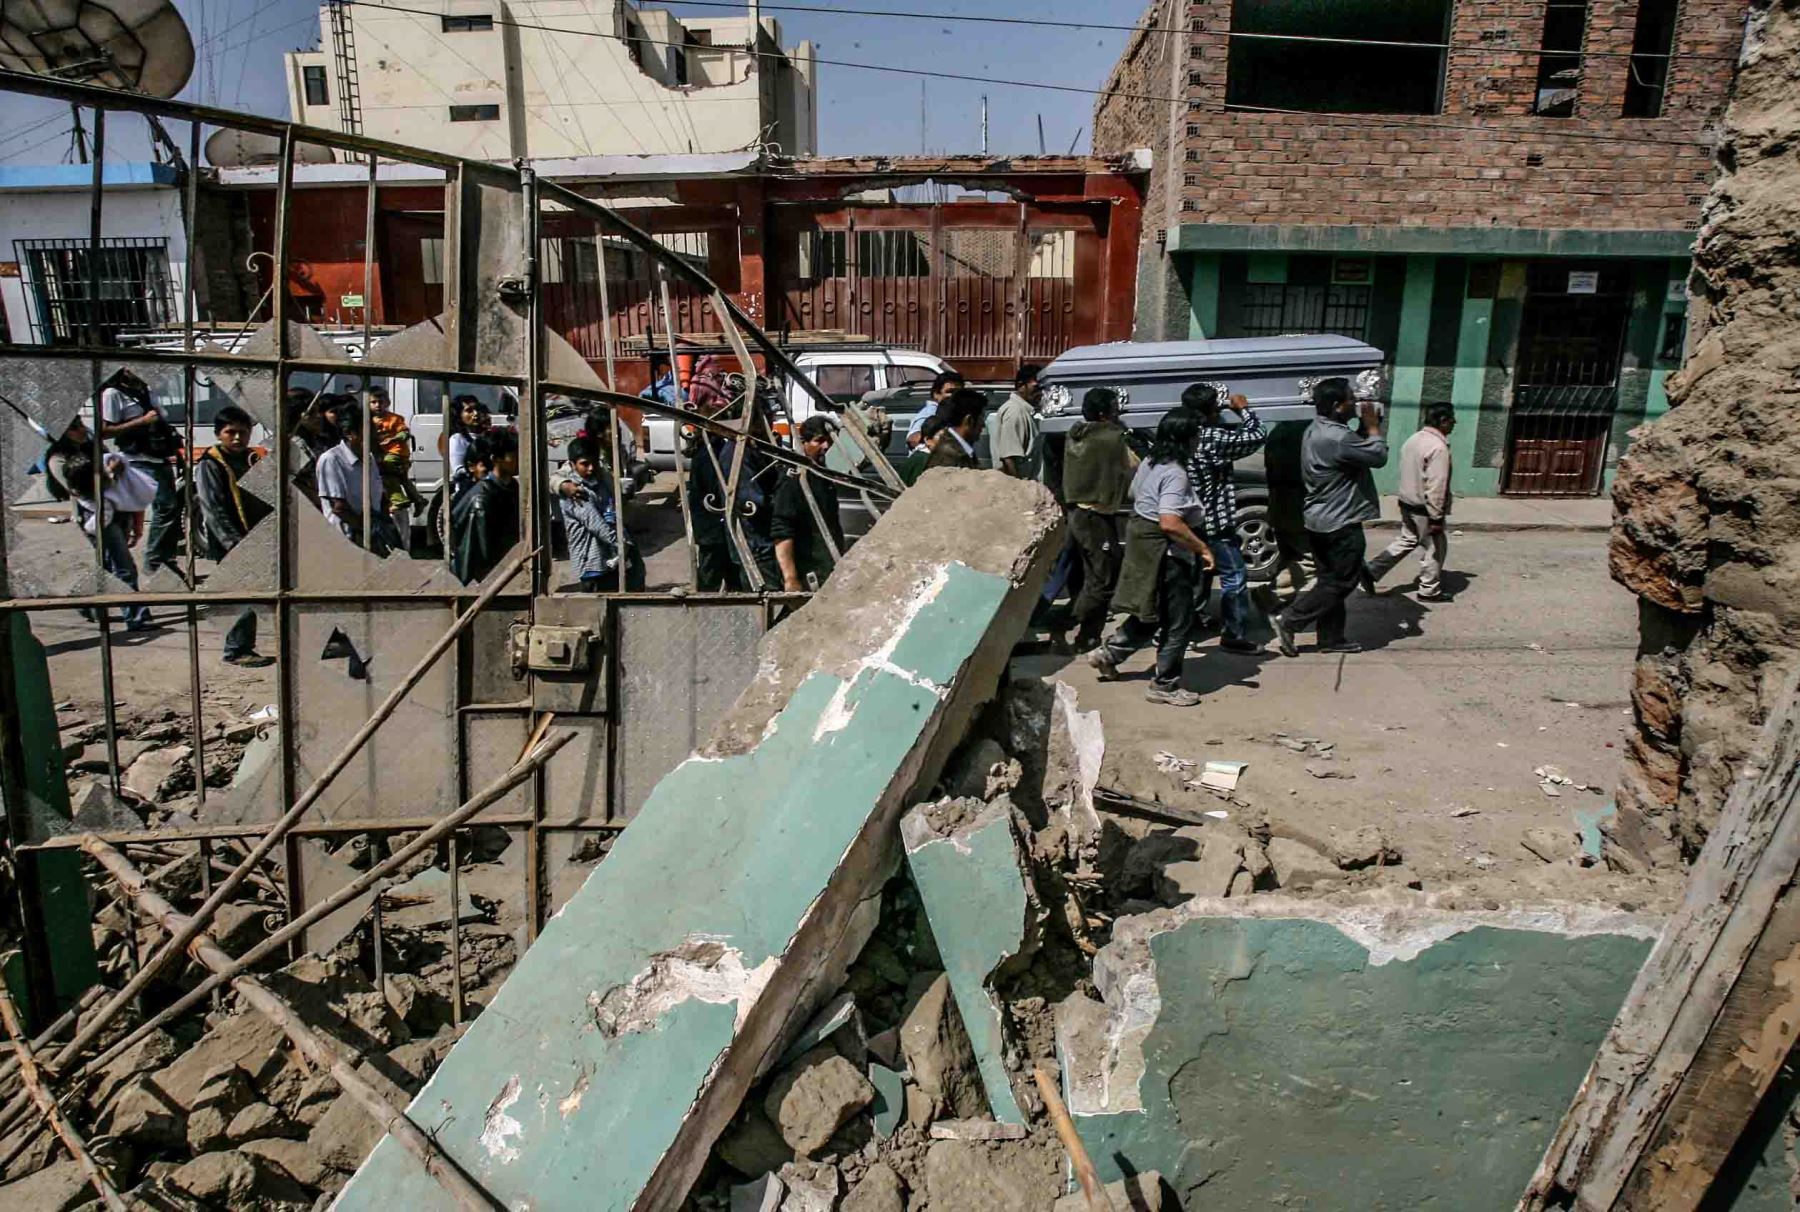 Terremoto en Pisco. El sismo del 2007 con epicentro en Pisco destruyó la mayor parte de la infraestructura de la ciudad sureña
Foto: ANDINA/Carlos Lezama